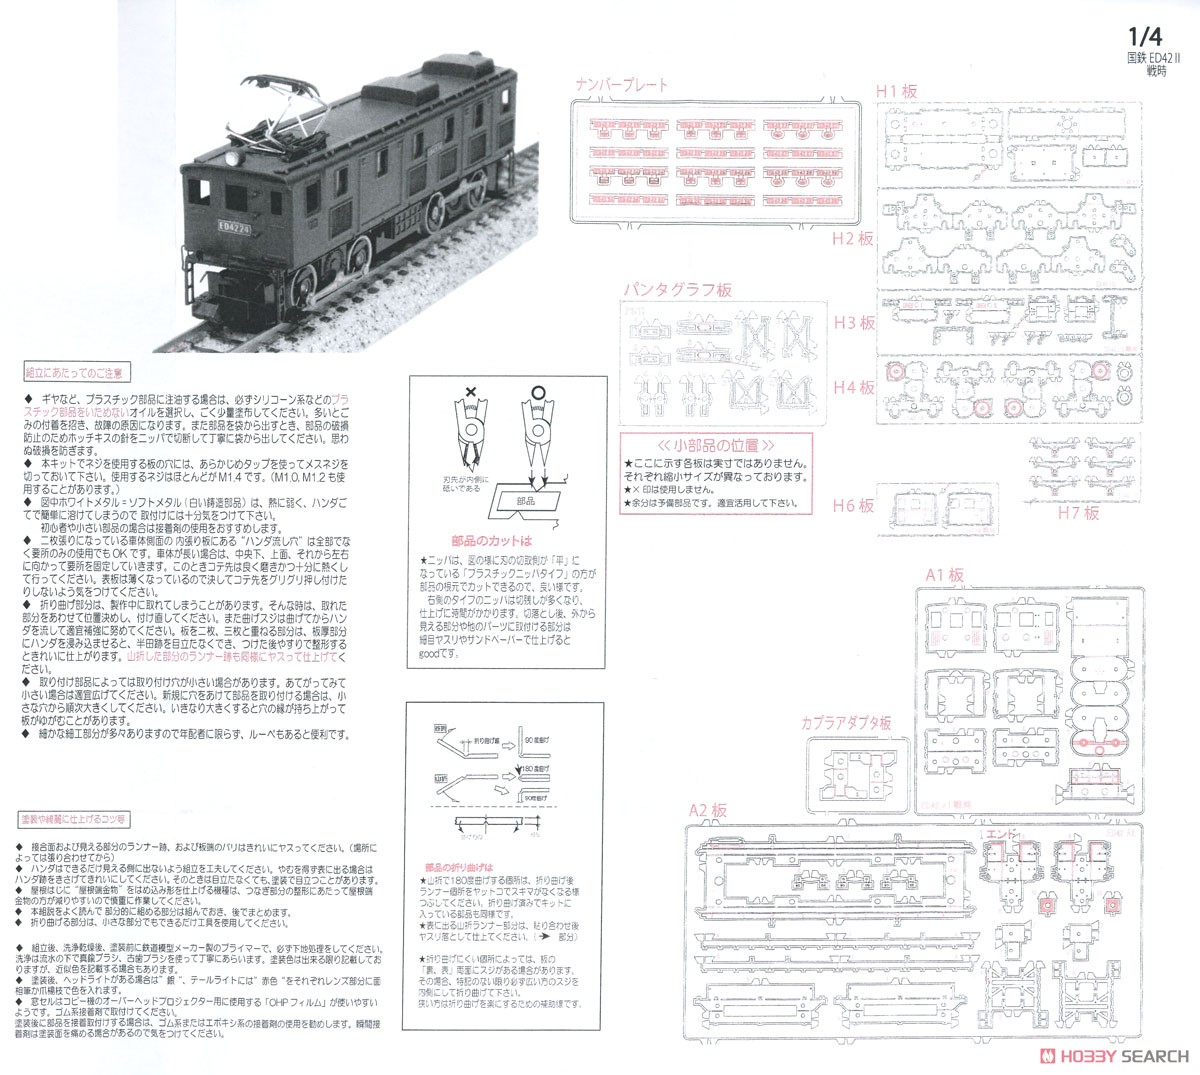 鉄道省 ED42形 電気機関車 II (戦時型) 組立キット リニューアル品 (組み立てキット) (鉄道模型) 設計図1